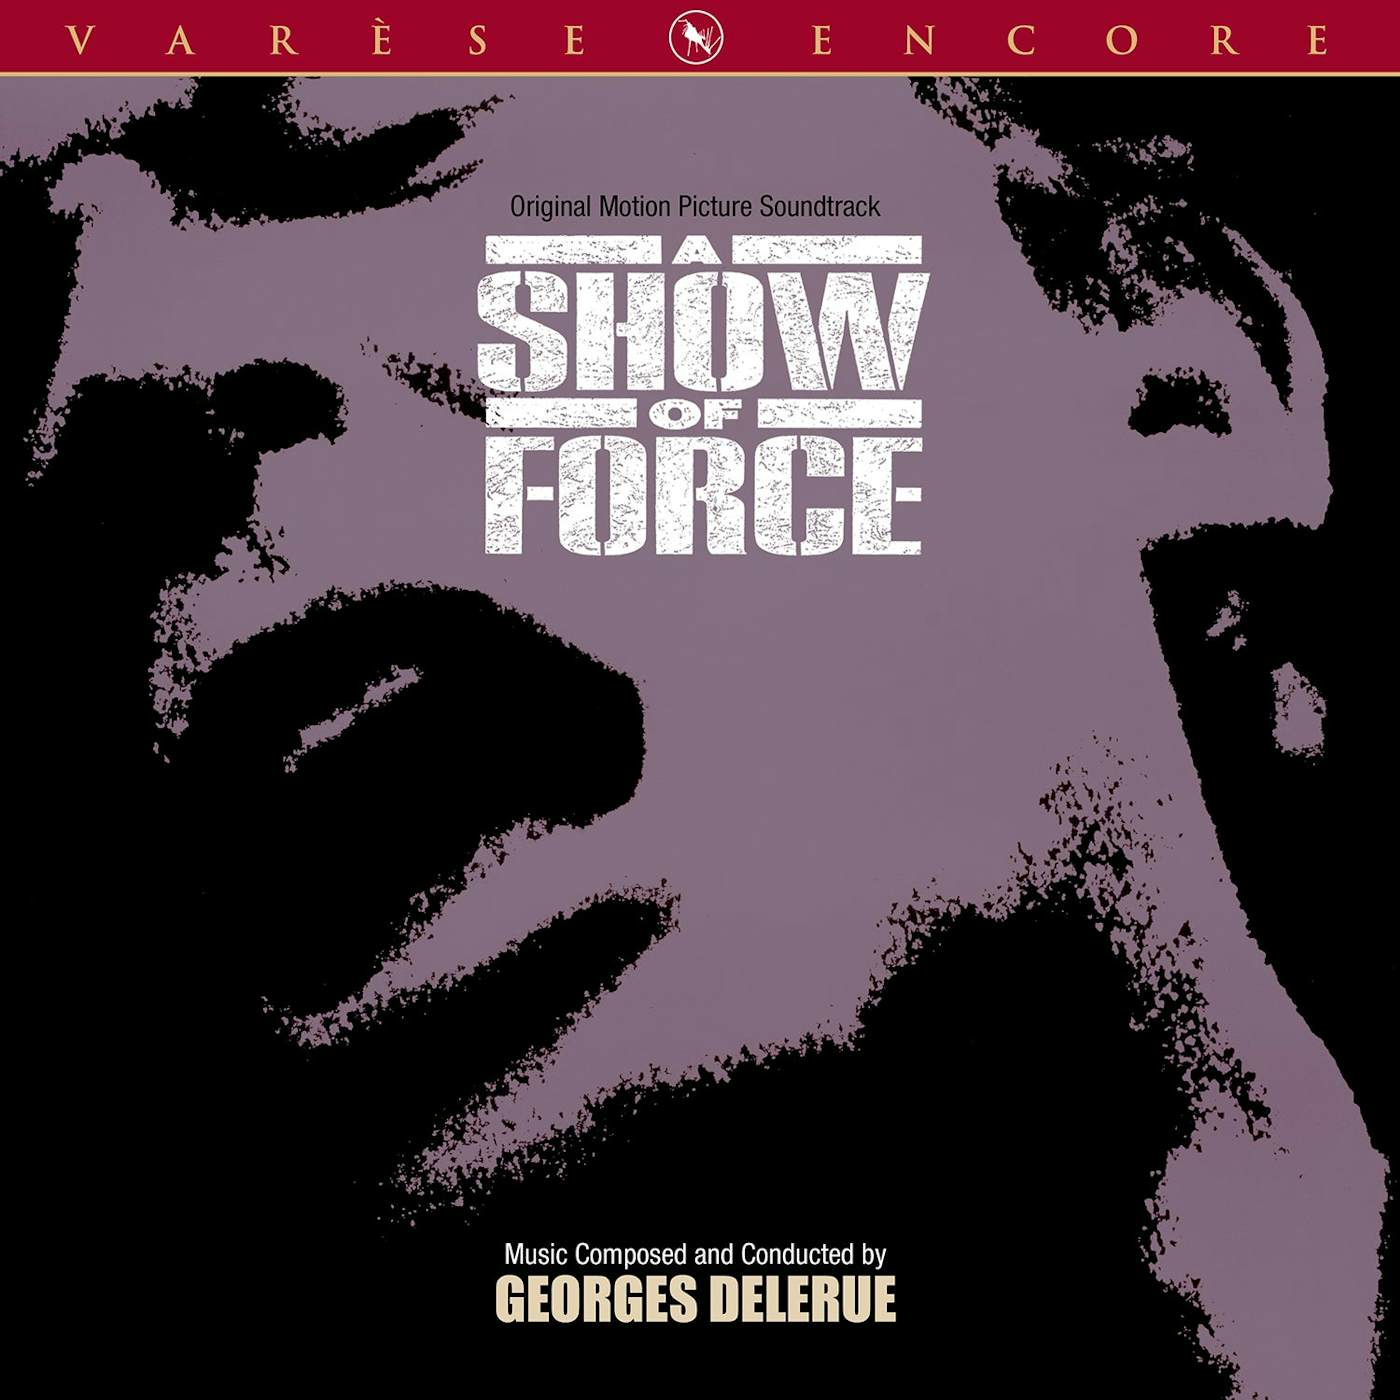 Georges Delerue A Show Of Force (Varèse Encore) (CD)